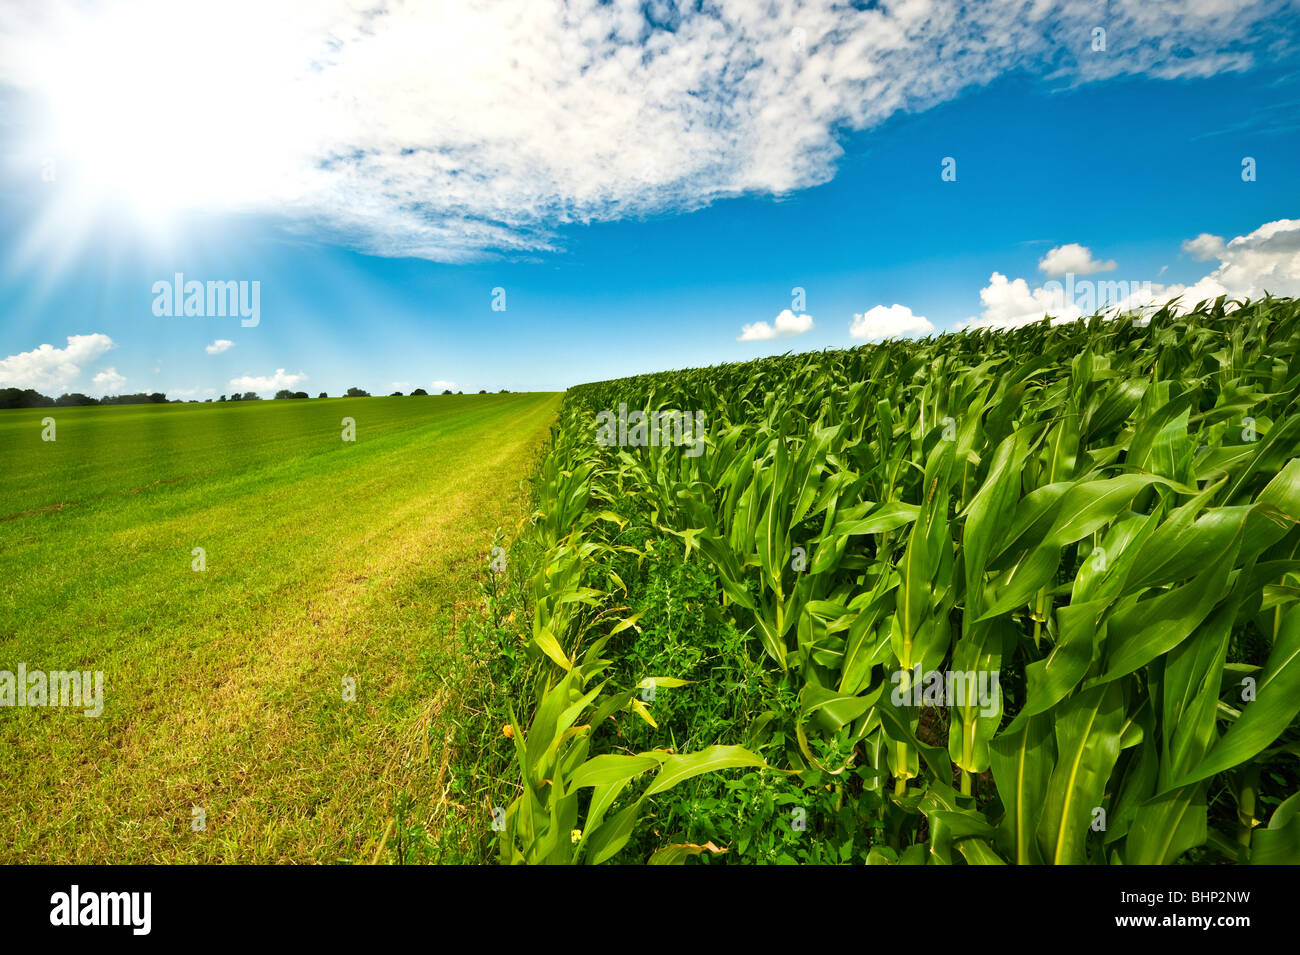 Tierras agrícolas en verano con hierba verde fresca, campo de maíz y brillante cielo azul Foto de stock